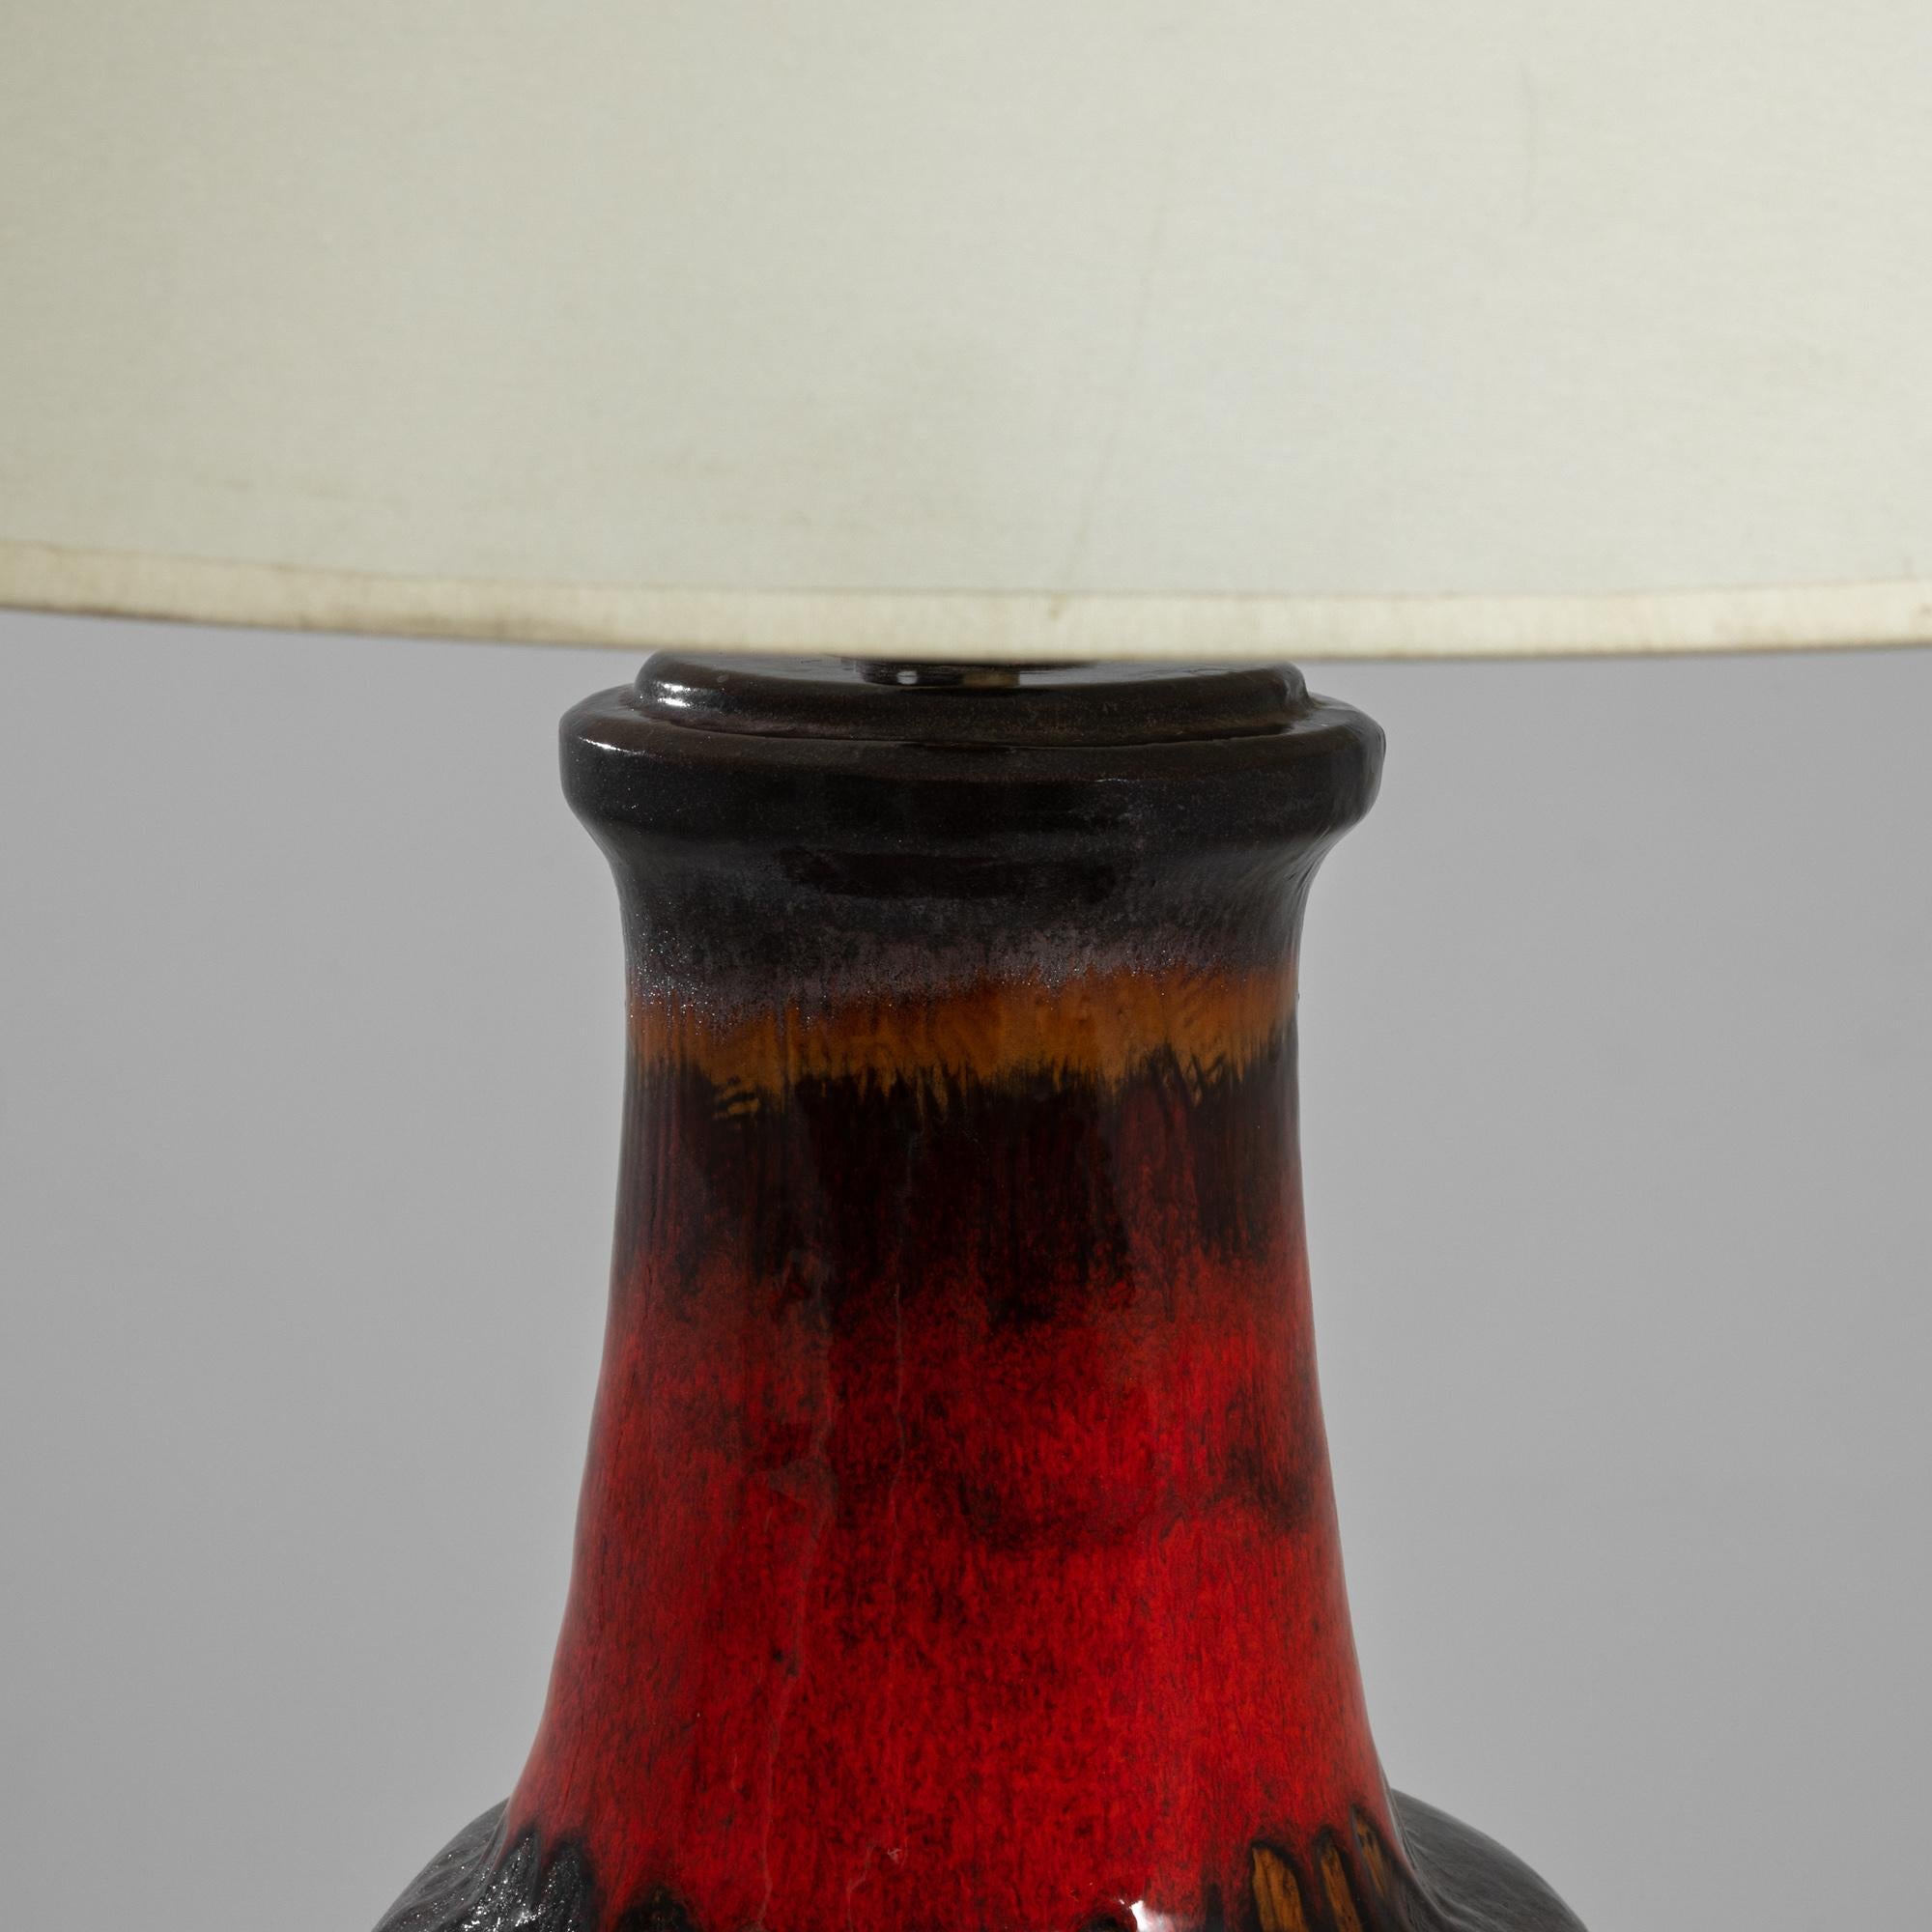 1960s German Ceramic Table Lamp 1